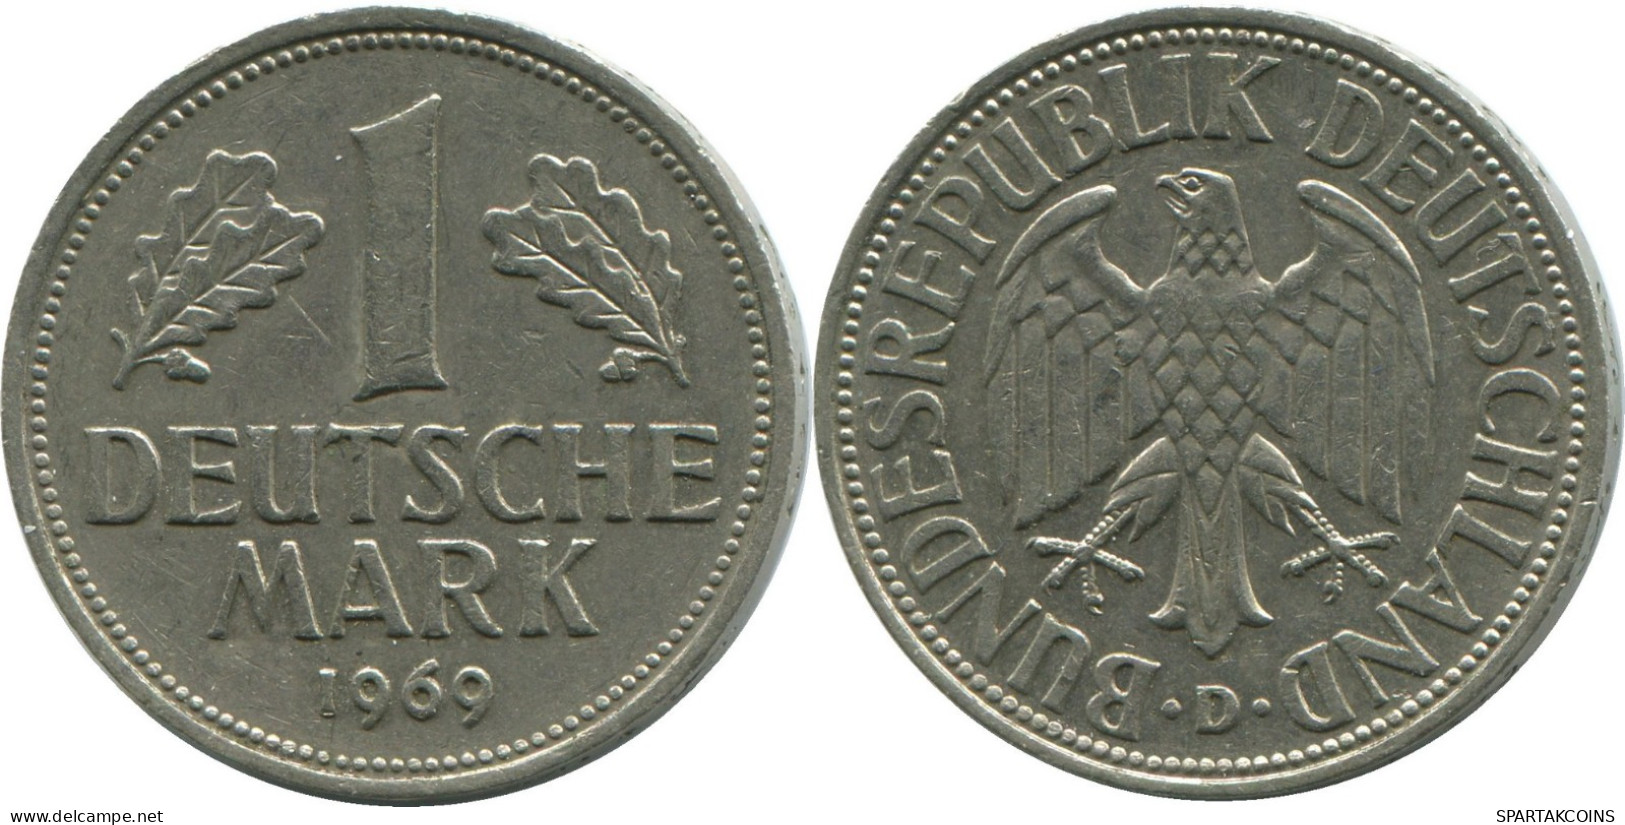 1 DM MARK 1969 D BRD ALEMANIA Moneda GERMANY #DE10407.5.E.A - 1 Mark